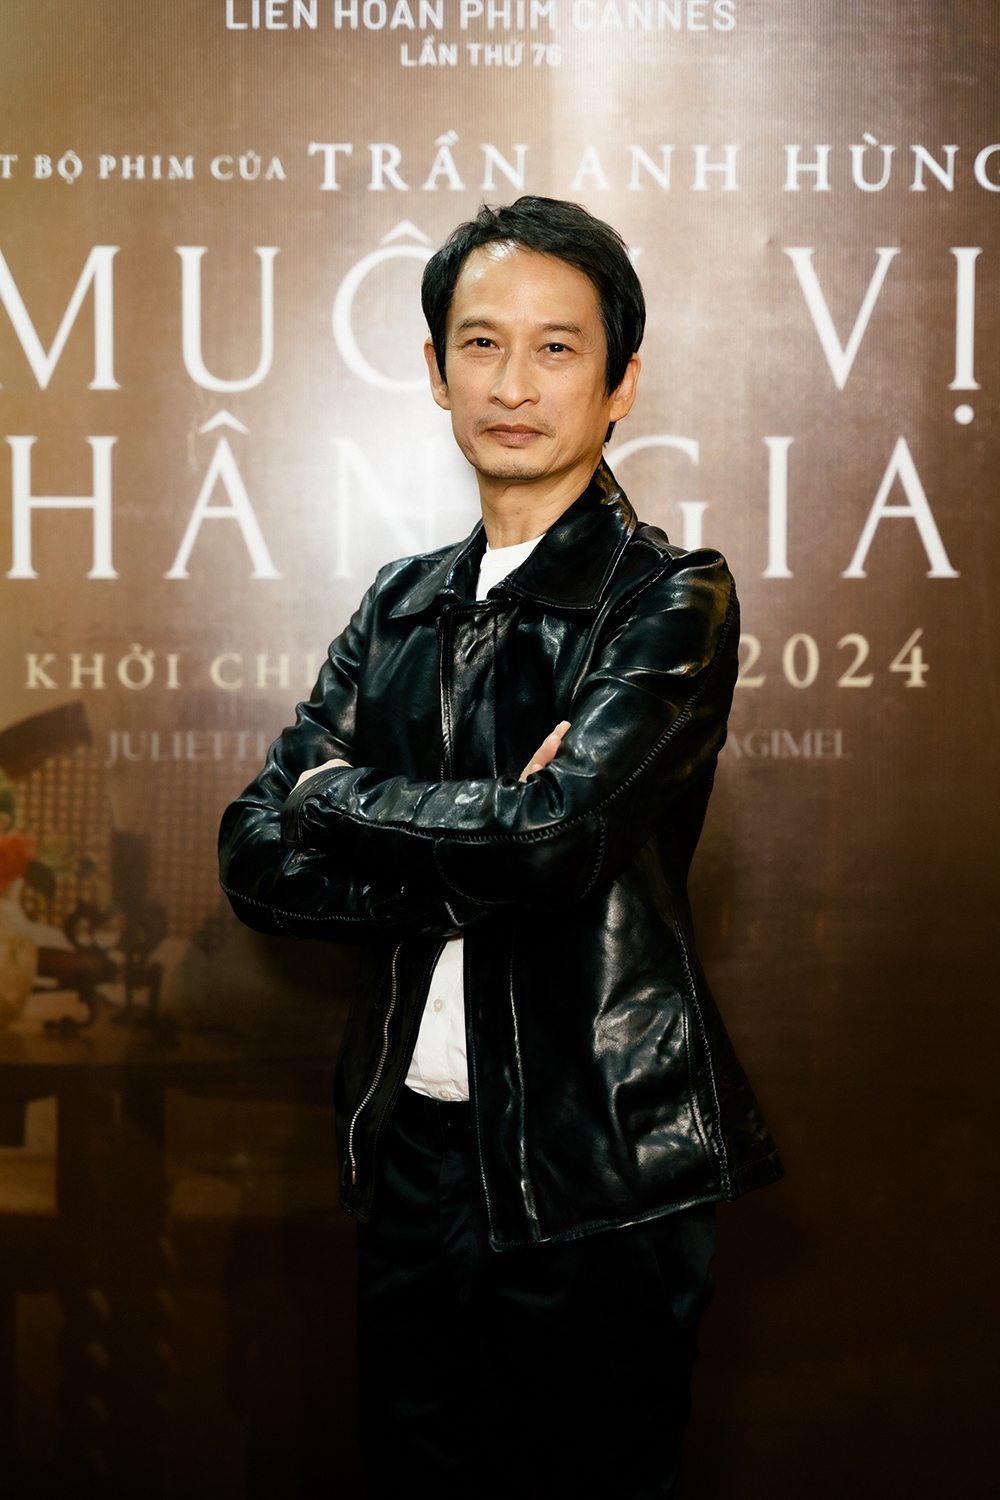 Đạo diễn Trần Anh Hùng: “Tôi không sợ khán giả kén phim”